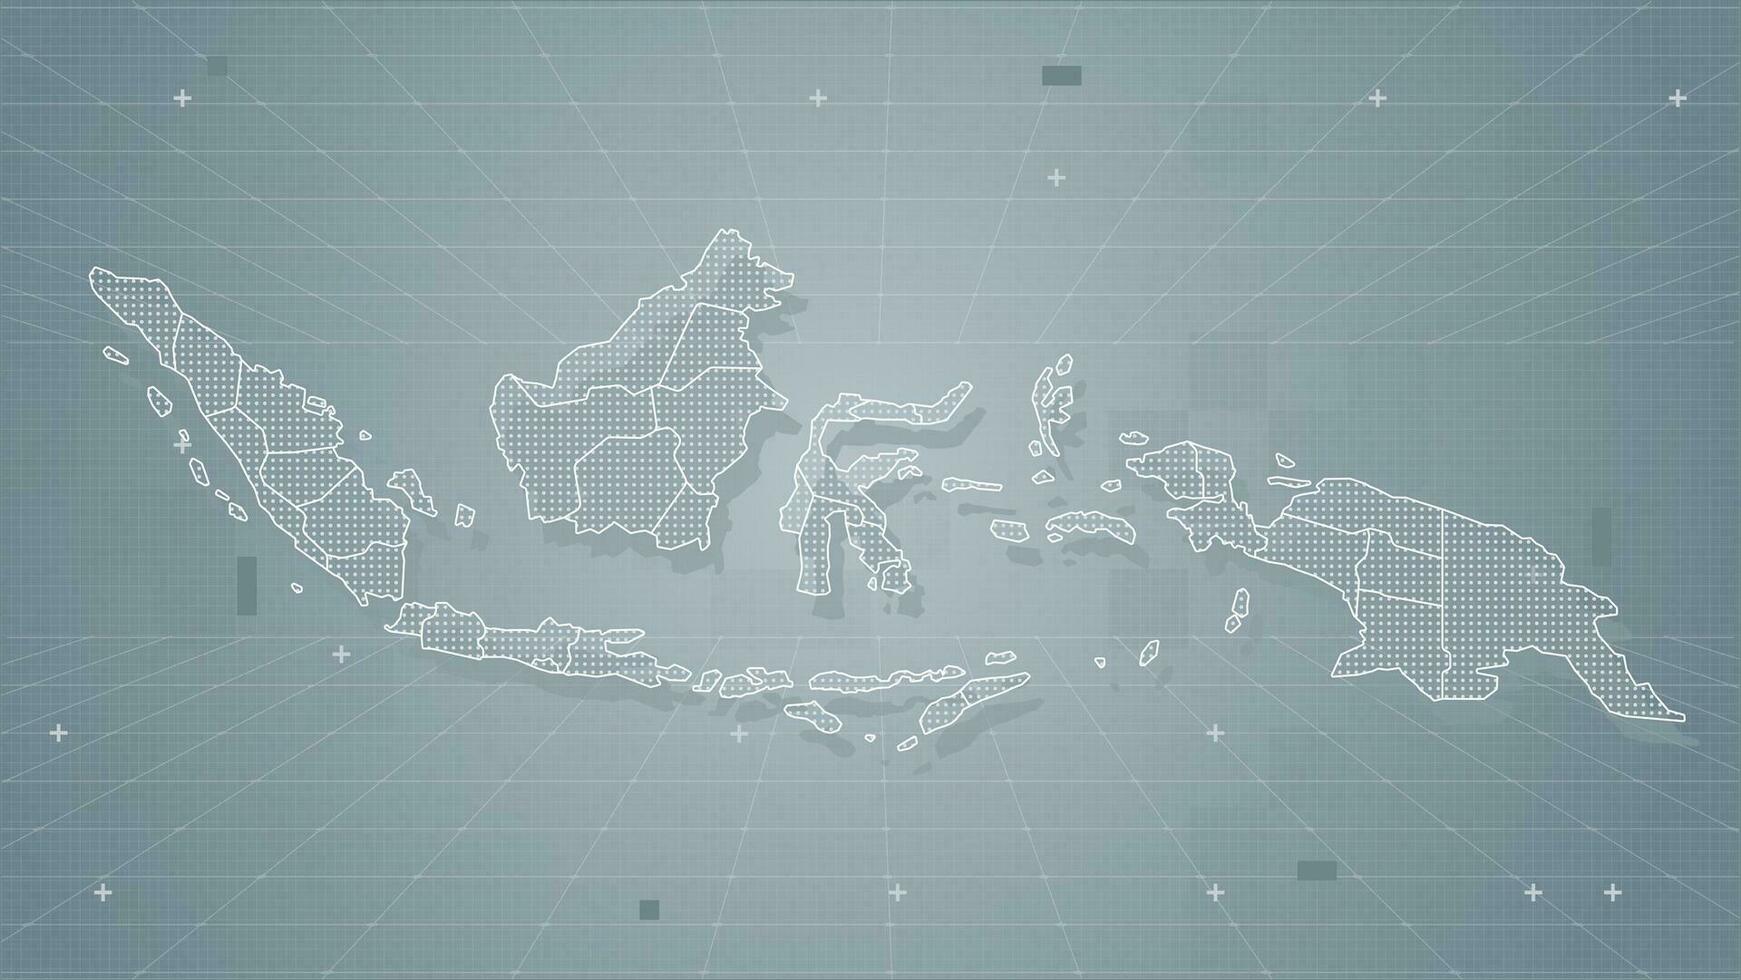 frio gris abstracción technologi vector tecnología estilizado moderno Indonesia mapa antecedentes estilizado estructura metálica y puntos para datos visualización y infografia hud gui ui